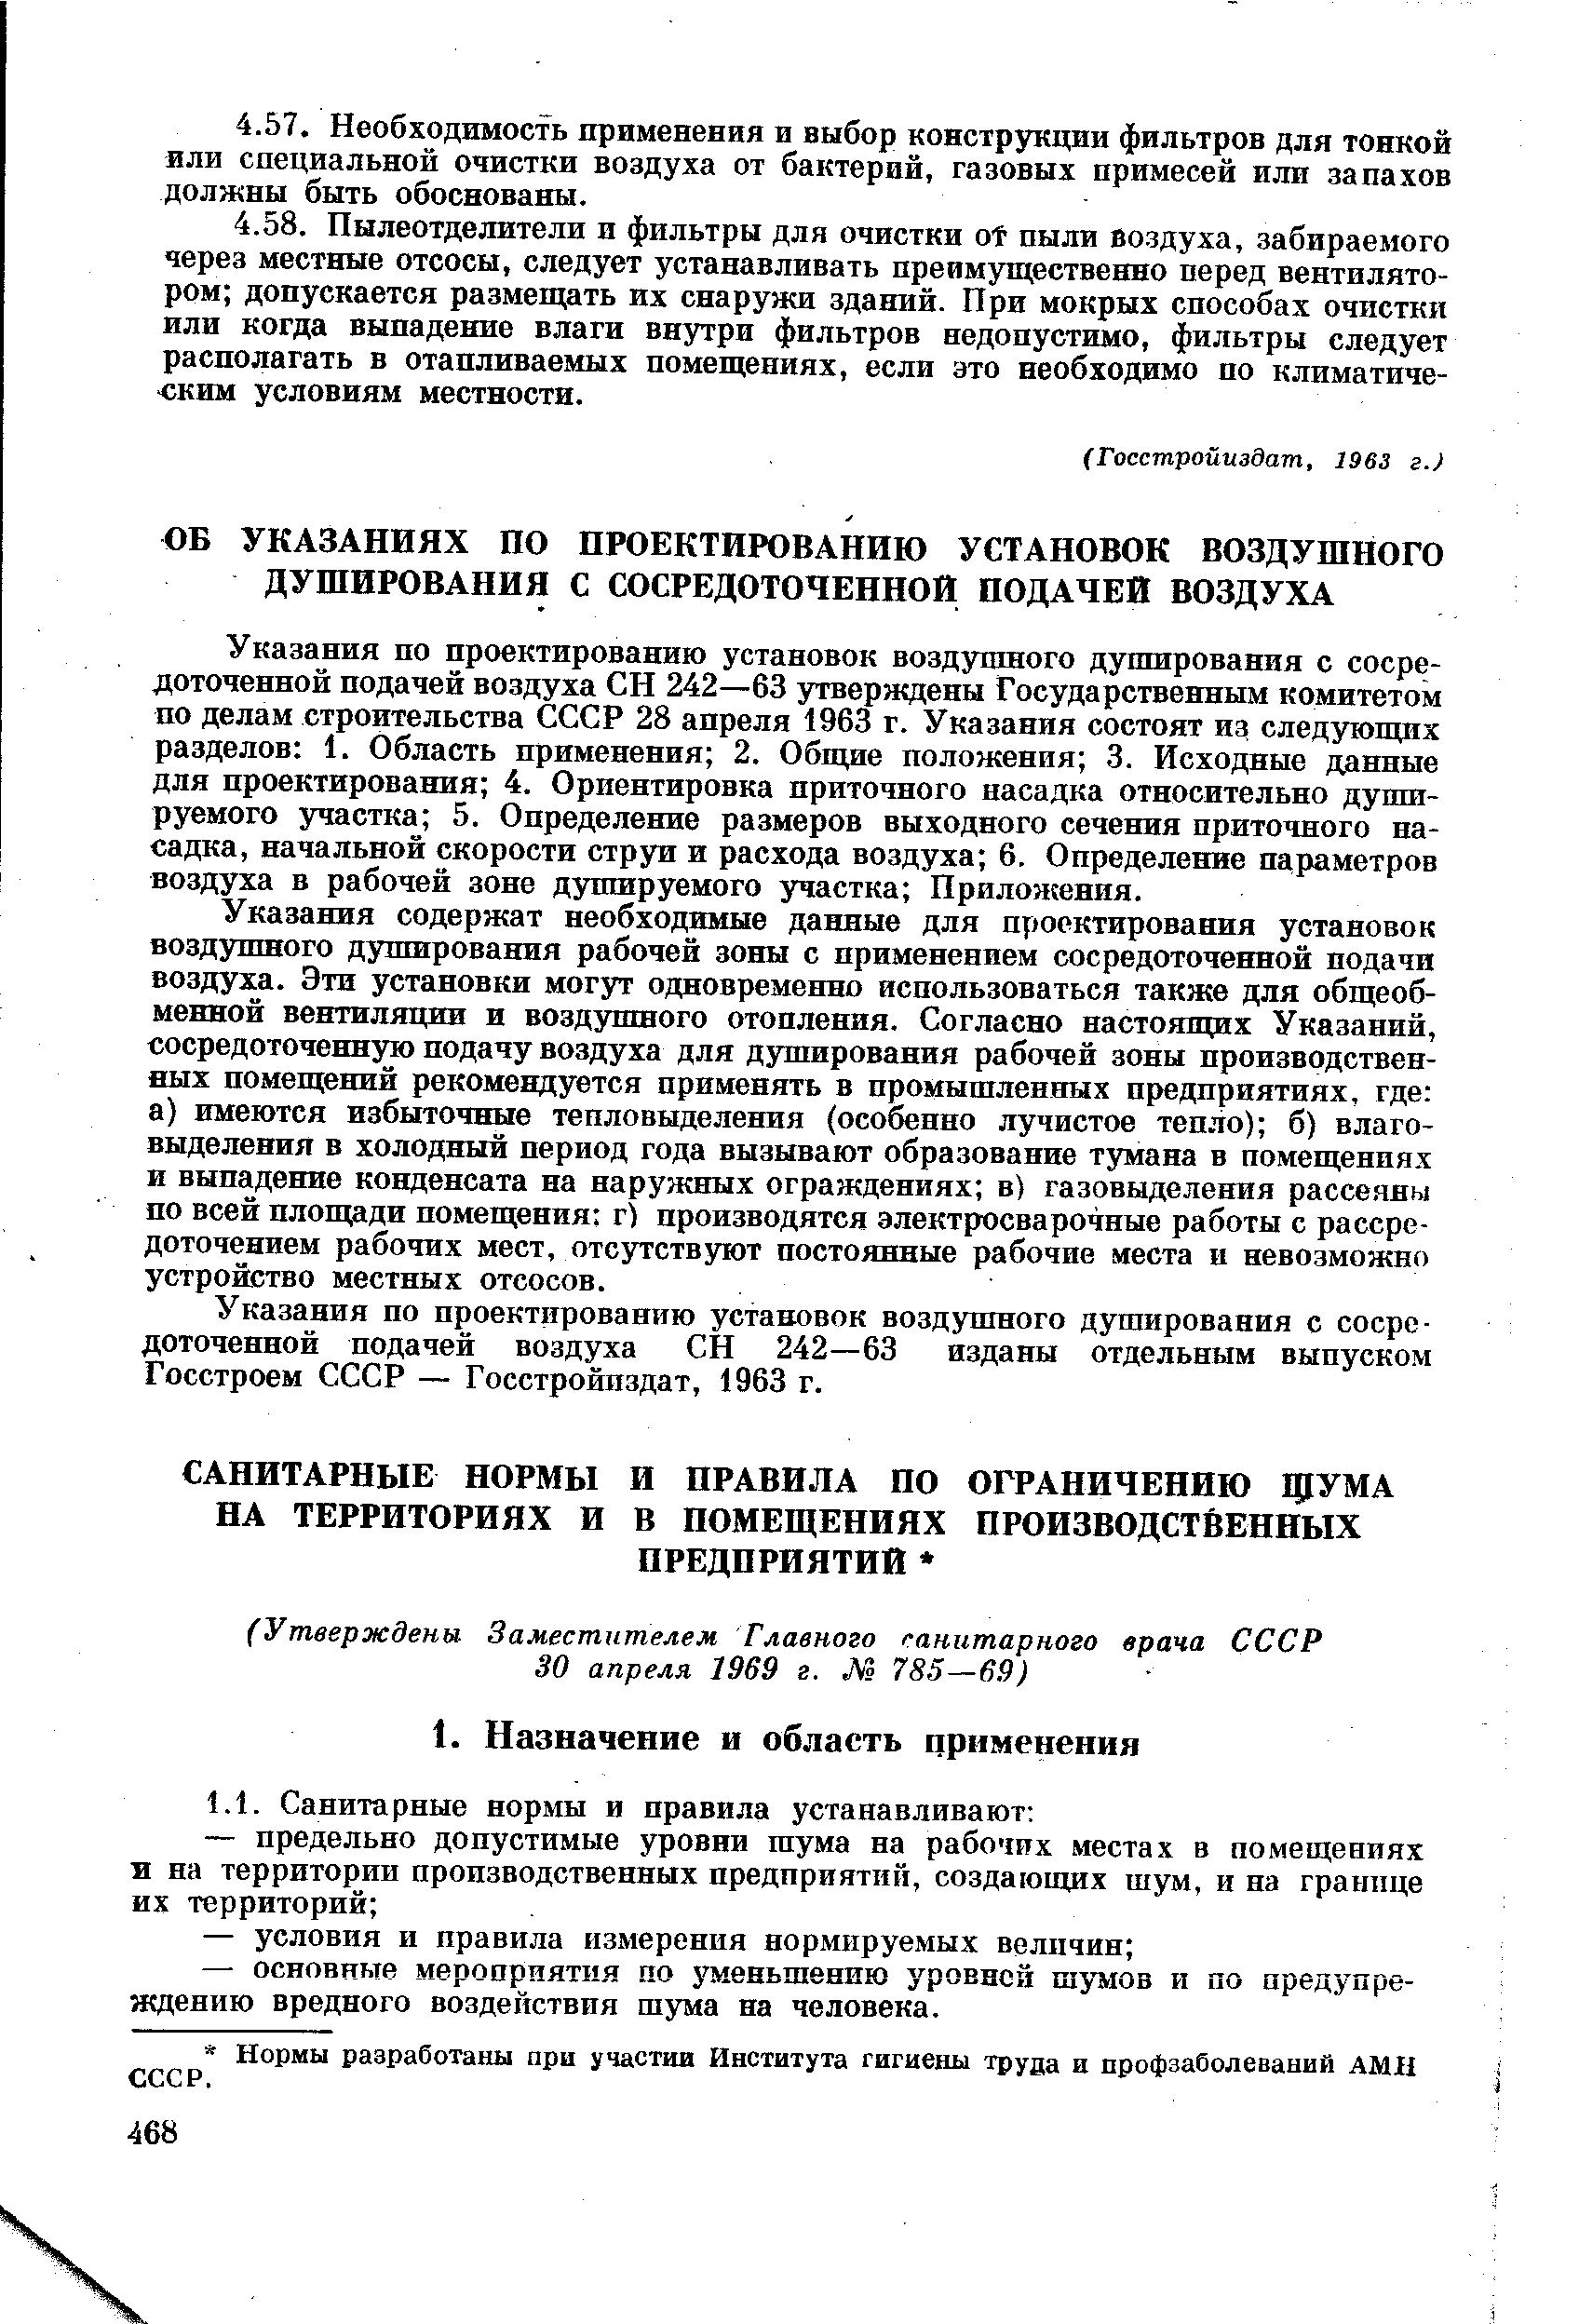 Указания по проектированию установок воздушного душирования с сосредоточенной подачей воздуха СН 242—63 изданы отдельным выпуском Госстроем СССР — Госстройиздат, 1963 г.